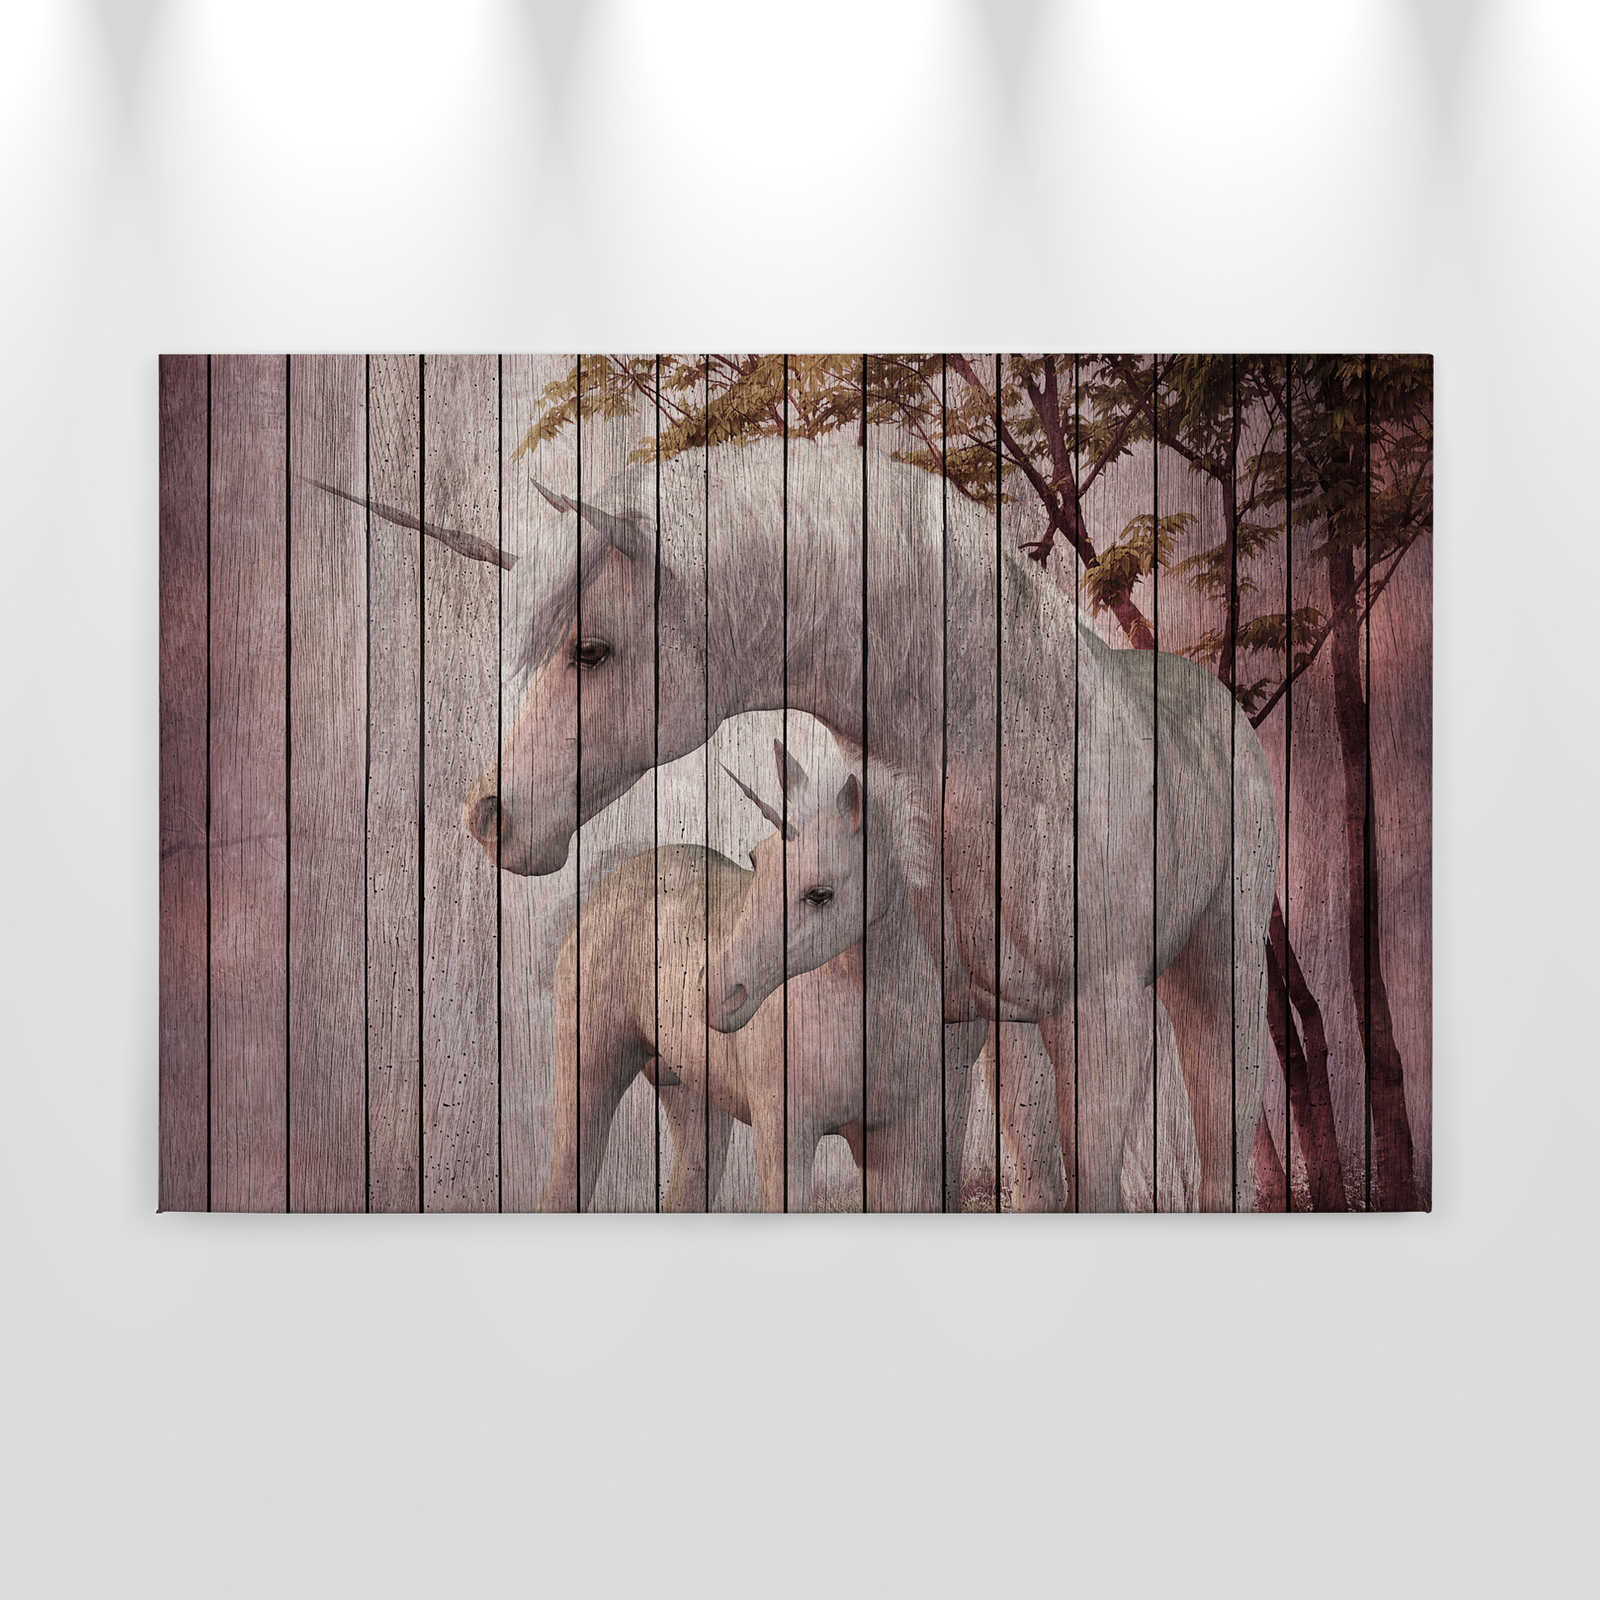             Fantasia 4 - Pittura su tela con effetto unicorno e legno - 0,90 m x 0,60 m
        